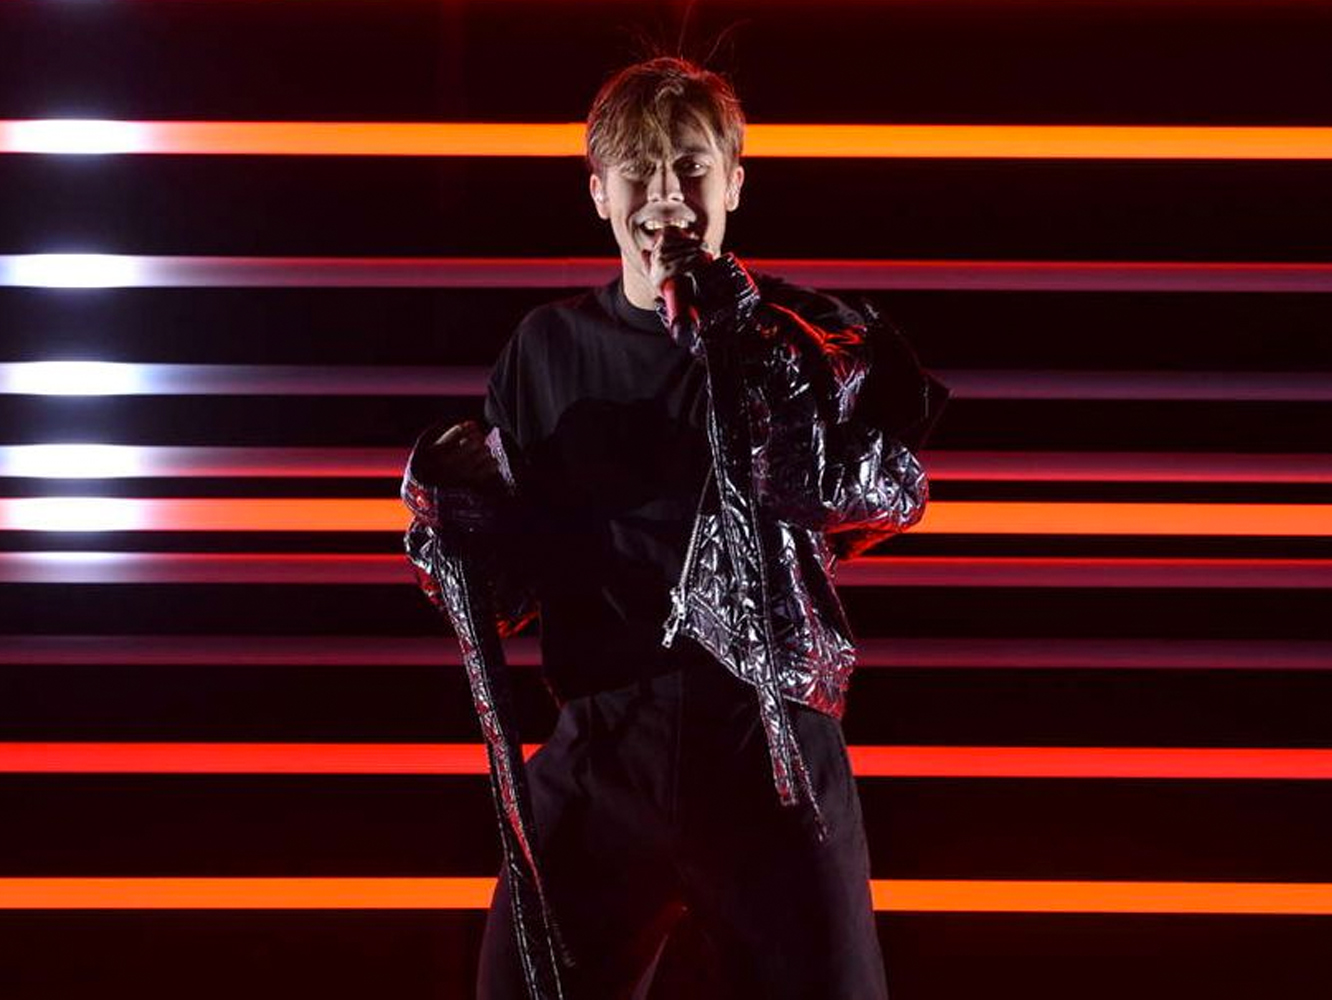  Sin sorpresas, Benjamin Ingrosso gana el Melodifestivalen e irá a Eurovisión con ‘Dance You Off’